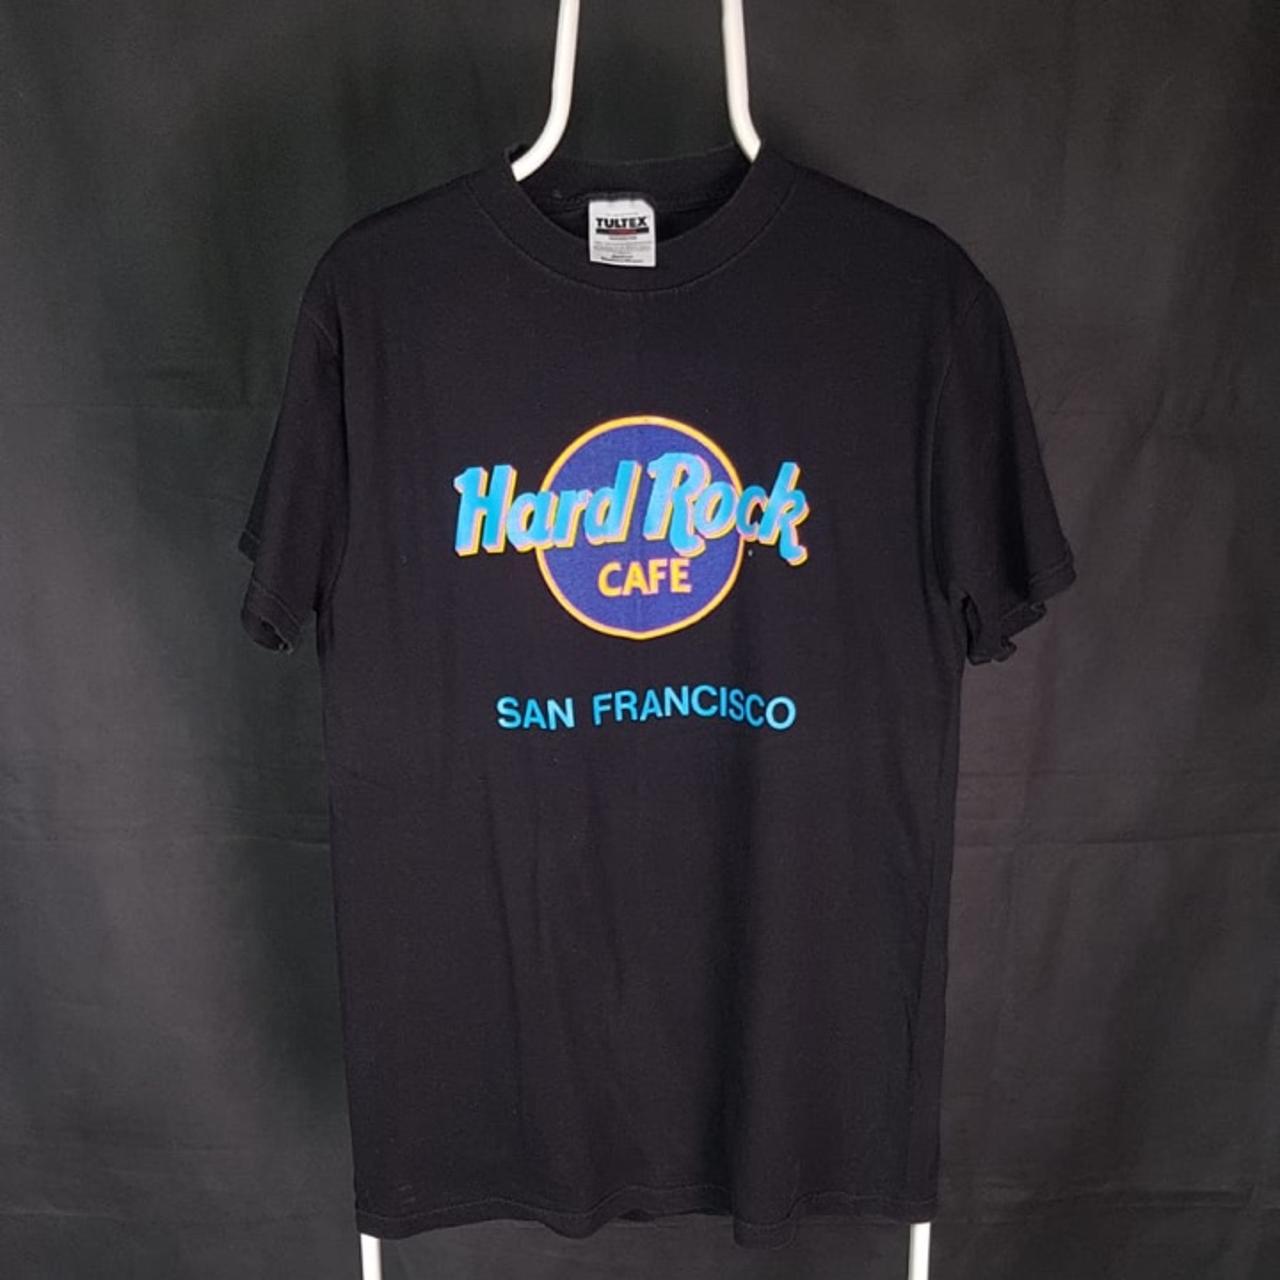 Hard Rock Cafe Men's T-shirt | Depop